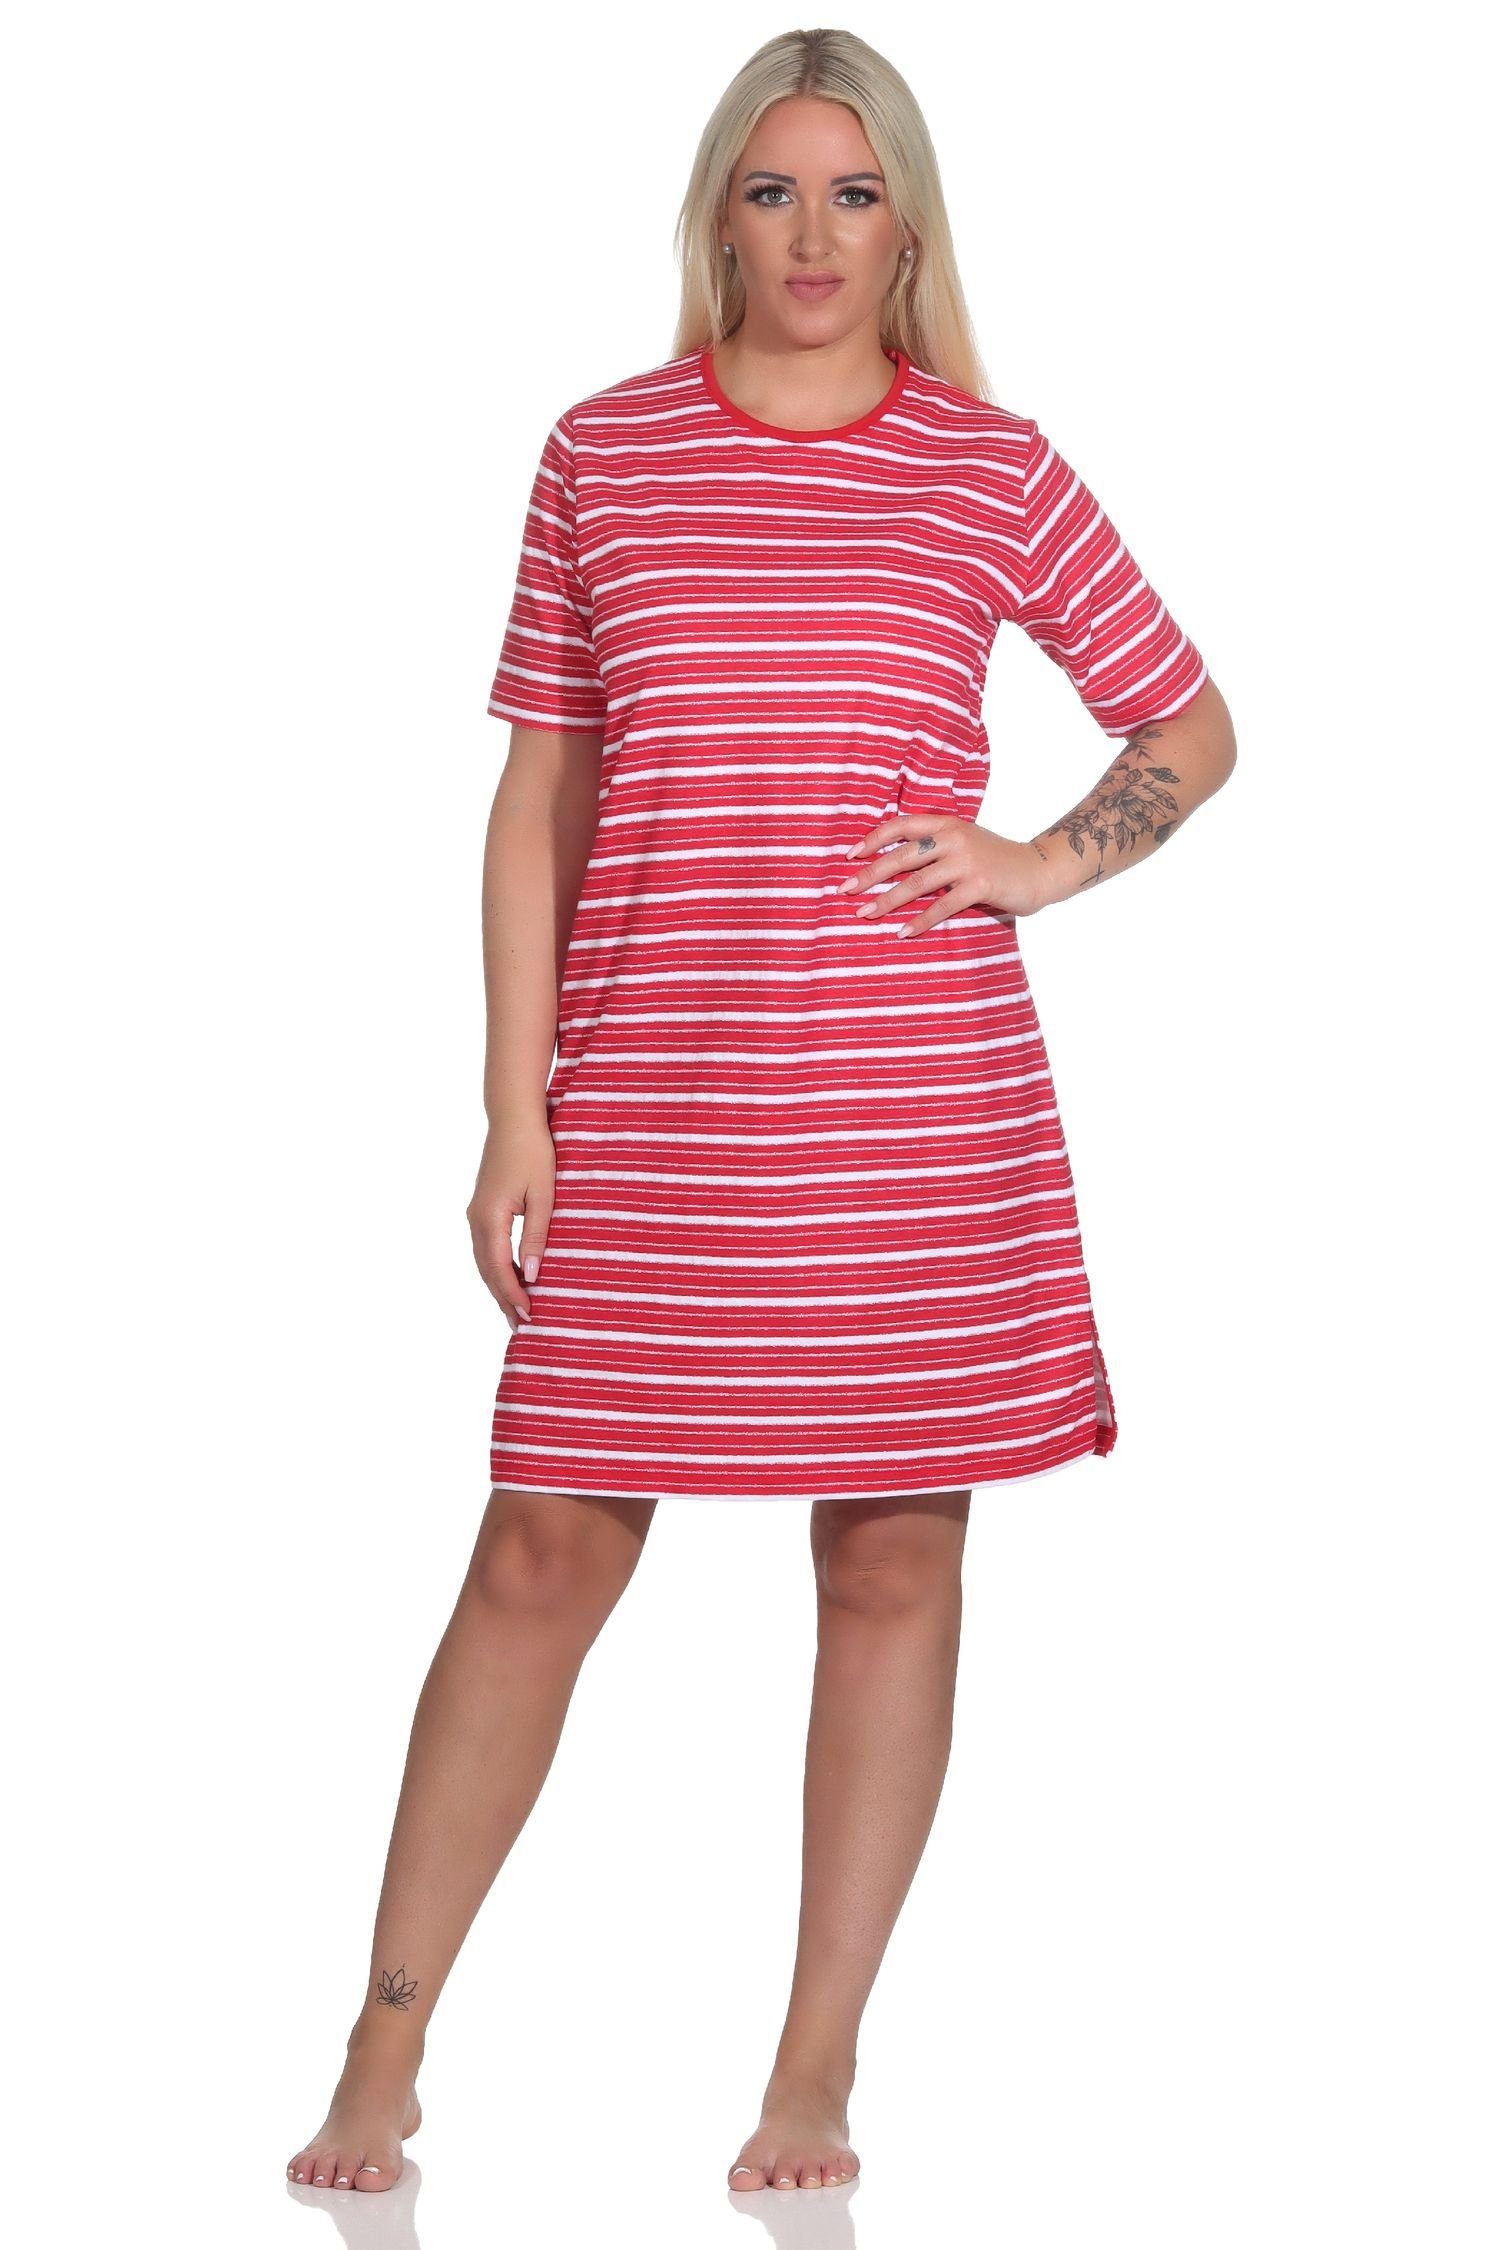 Normann Nachthemd Damen kurzarm Nachthemd in maritimer Optik - auch in Übergrößen rot | Nachthemden